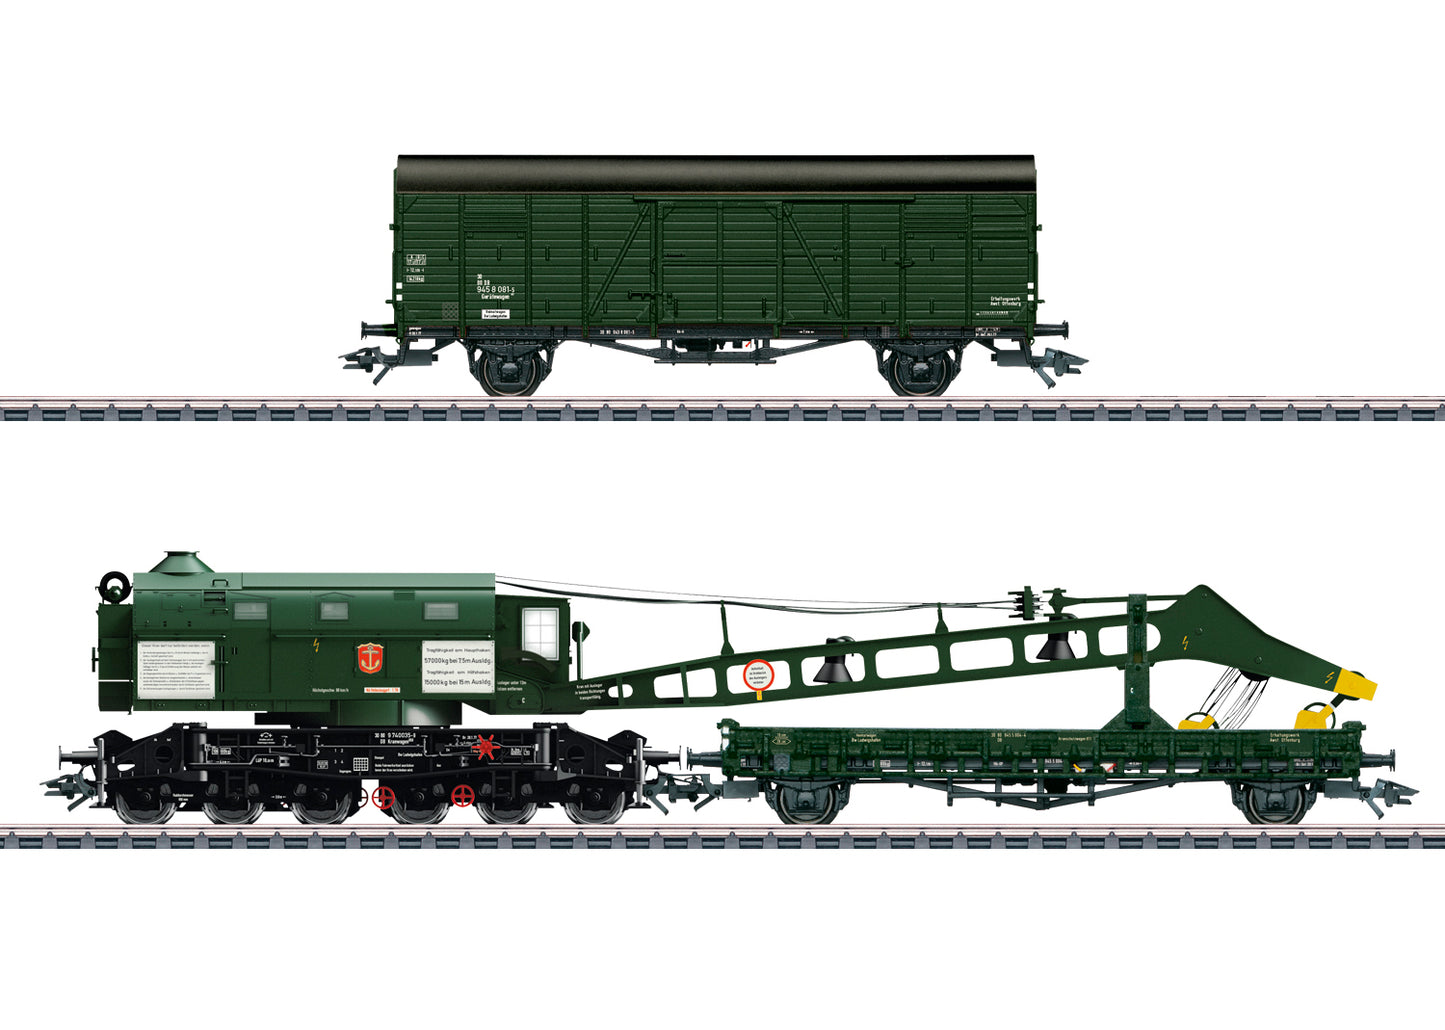 Trix 23457 - Type 058 Steam Crane (Ardelt)